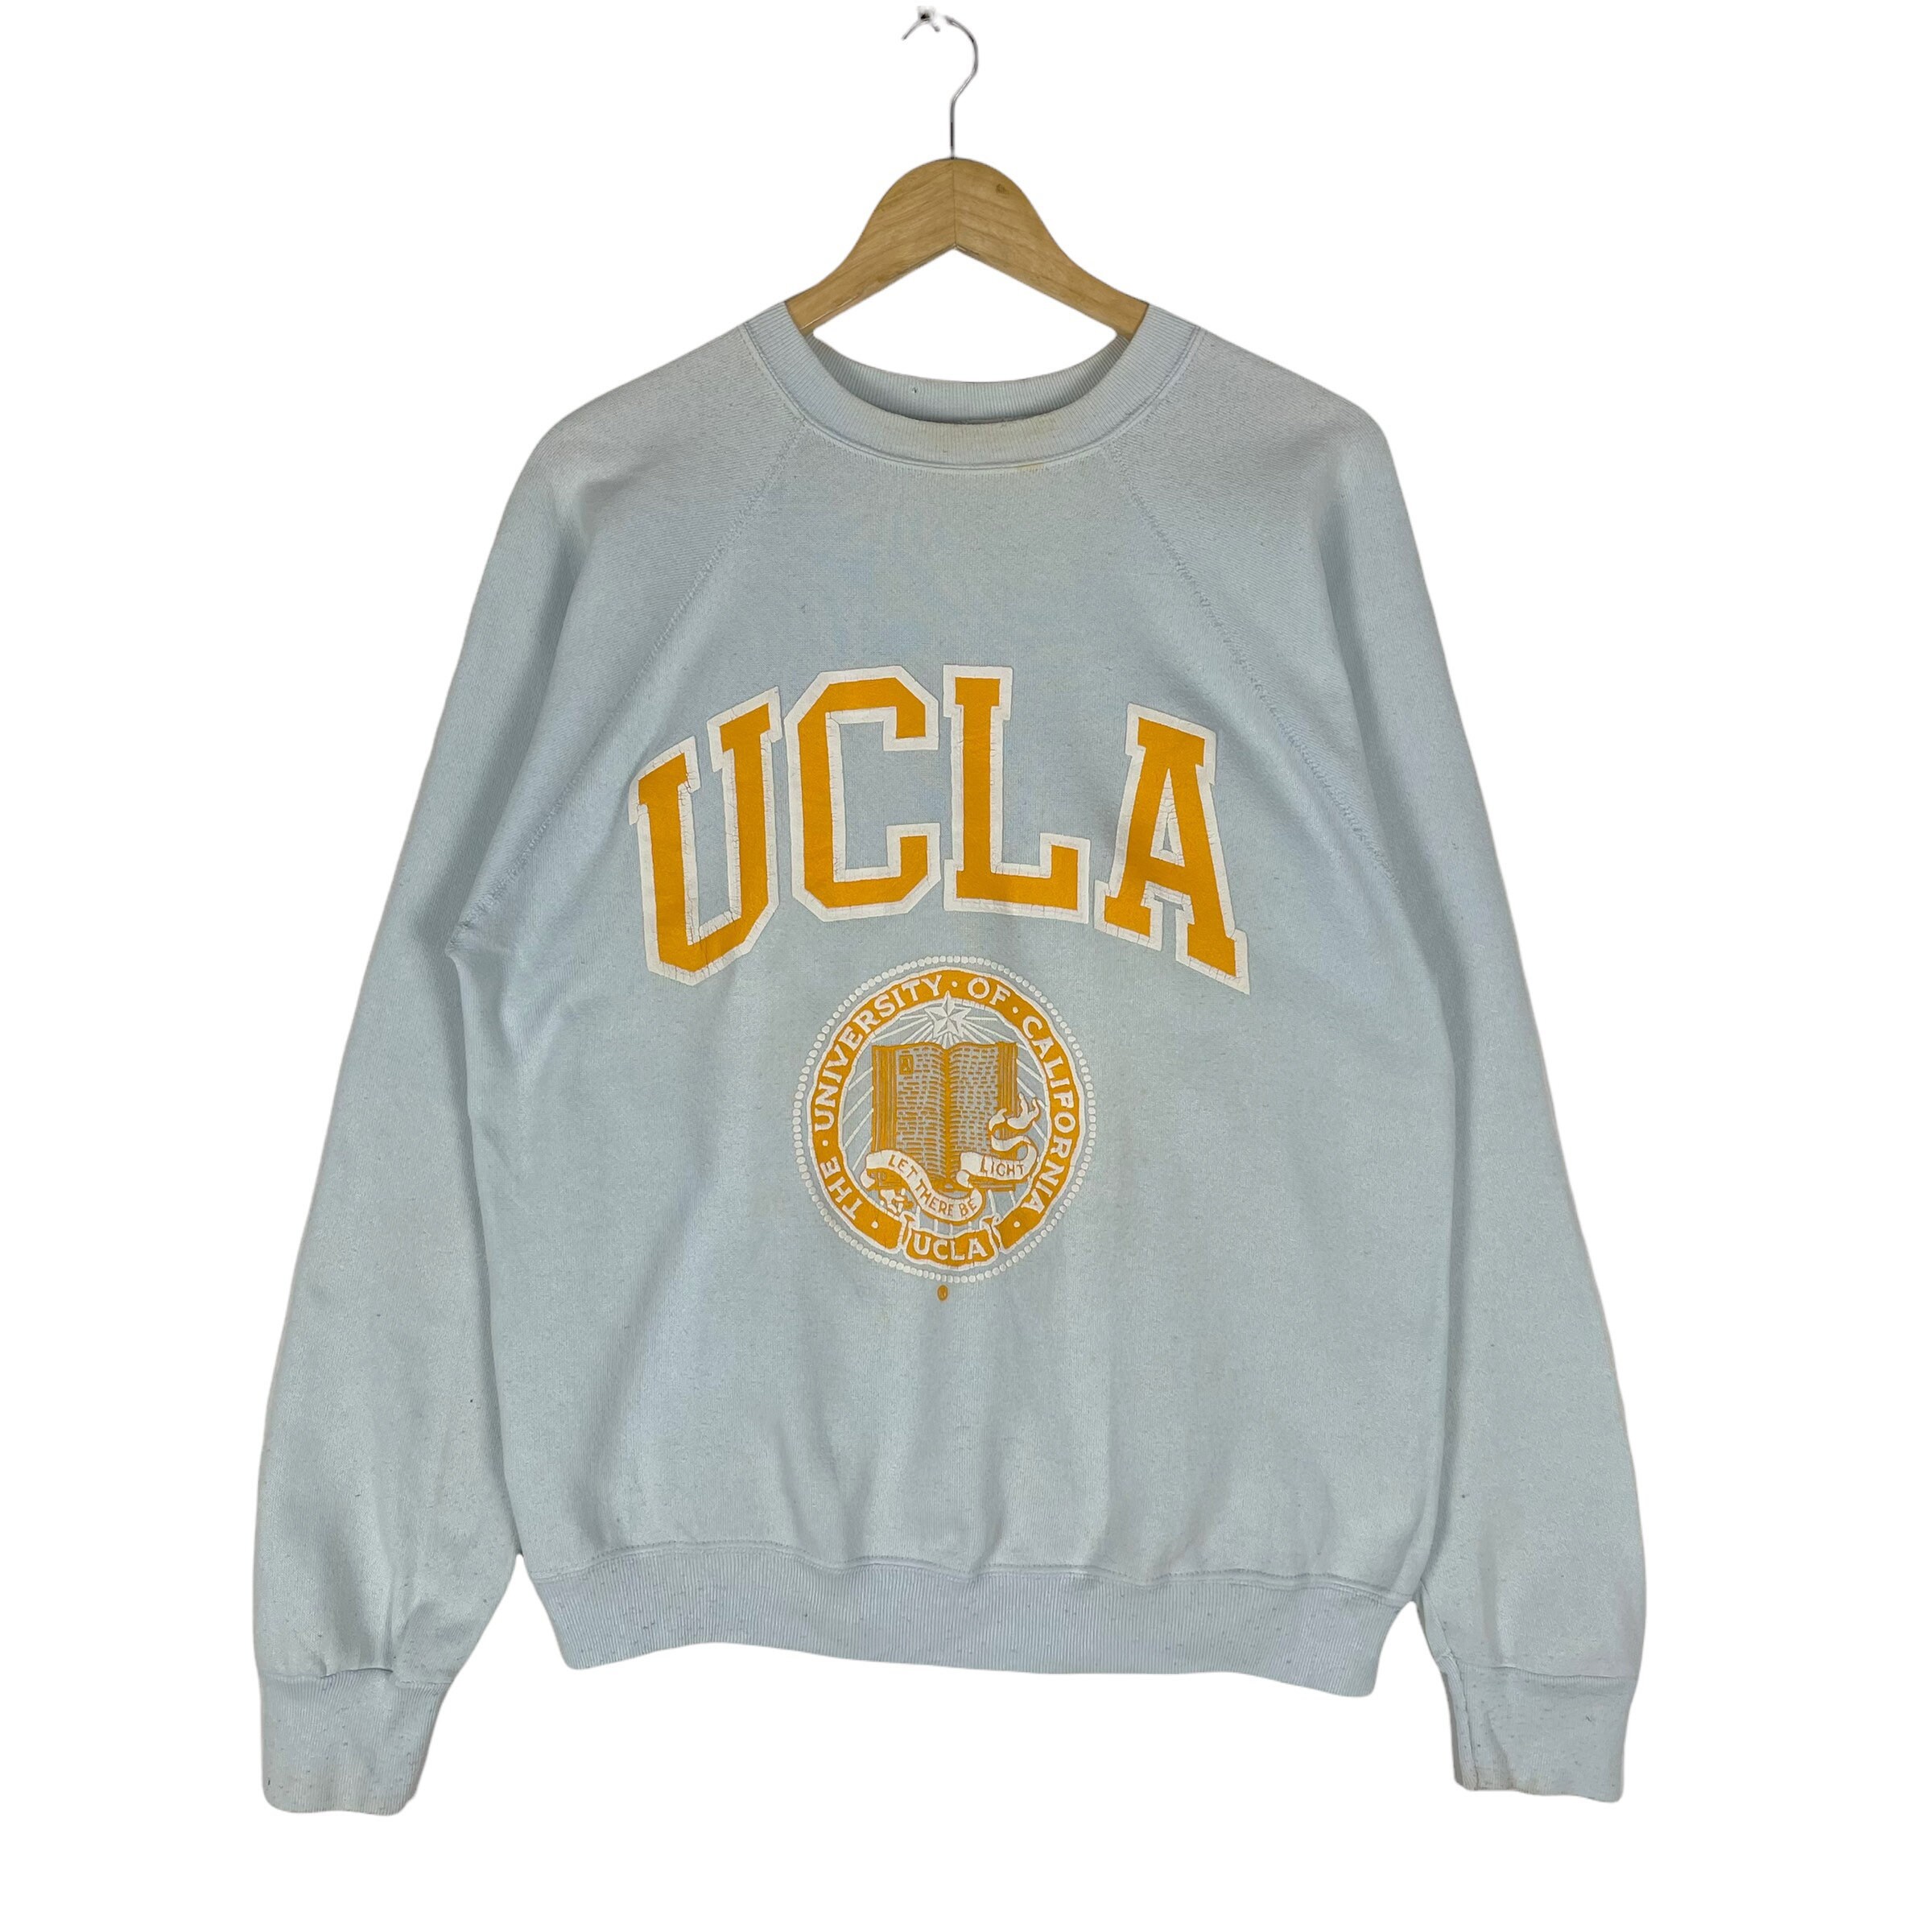 Vintage UCLA University of California Sweatshirt Navy Blue Size M